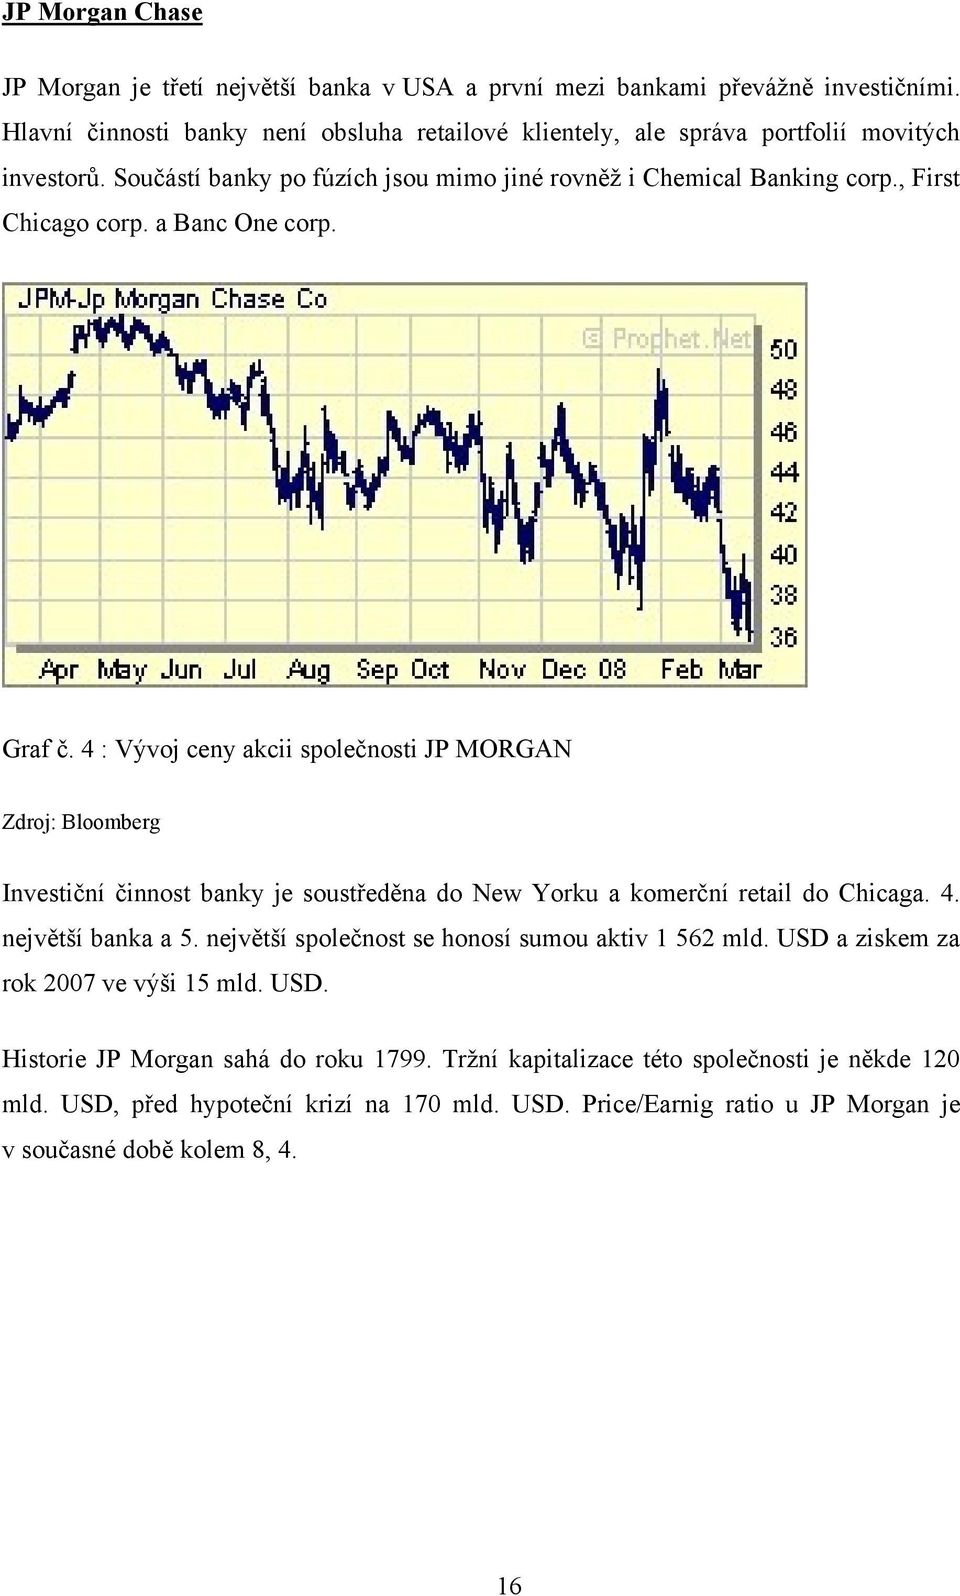 a Banc One corp. Graf č. 4 : Vývoj ceny akcii společnosti JP MORGAN Zdroj: Bloomberg Investiční činnost banky je soustředěna do New Yorku a komerční retail do Chicaga. 4. největší banka a 5.